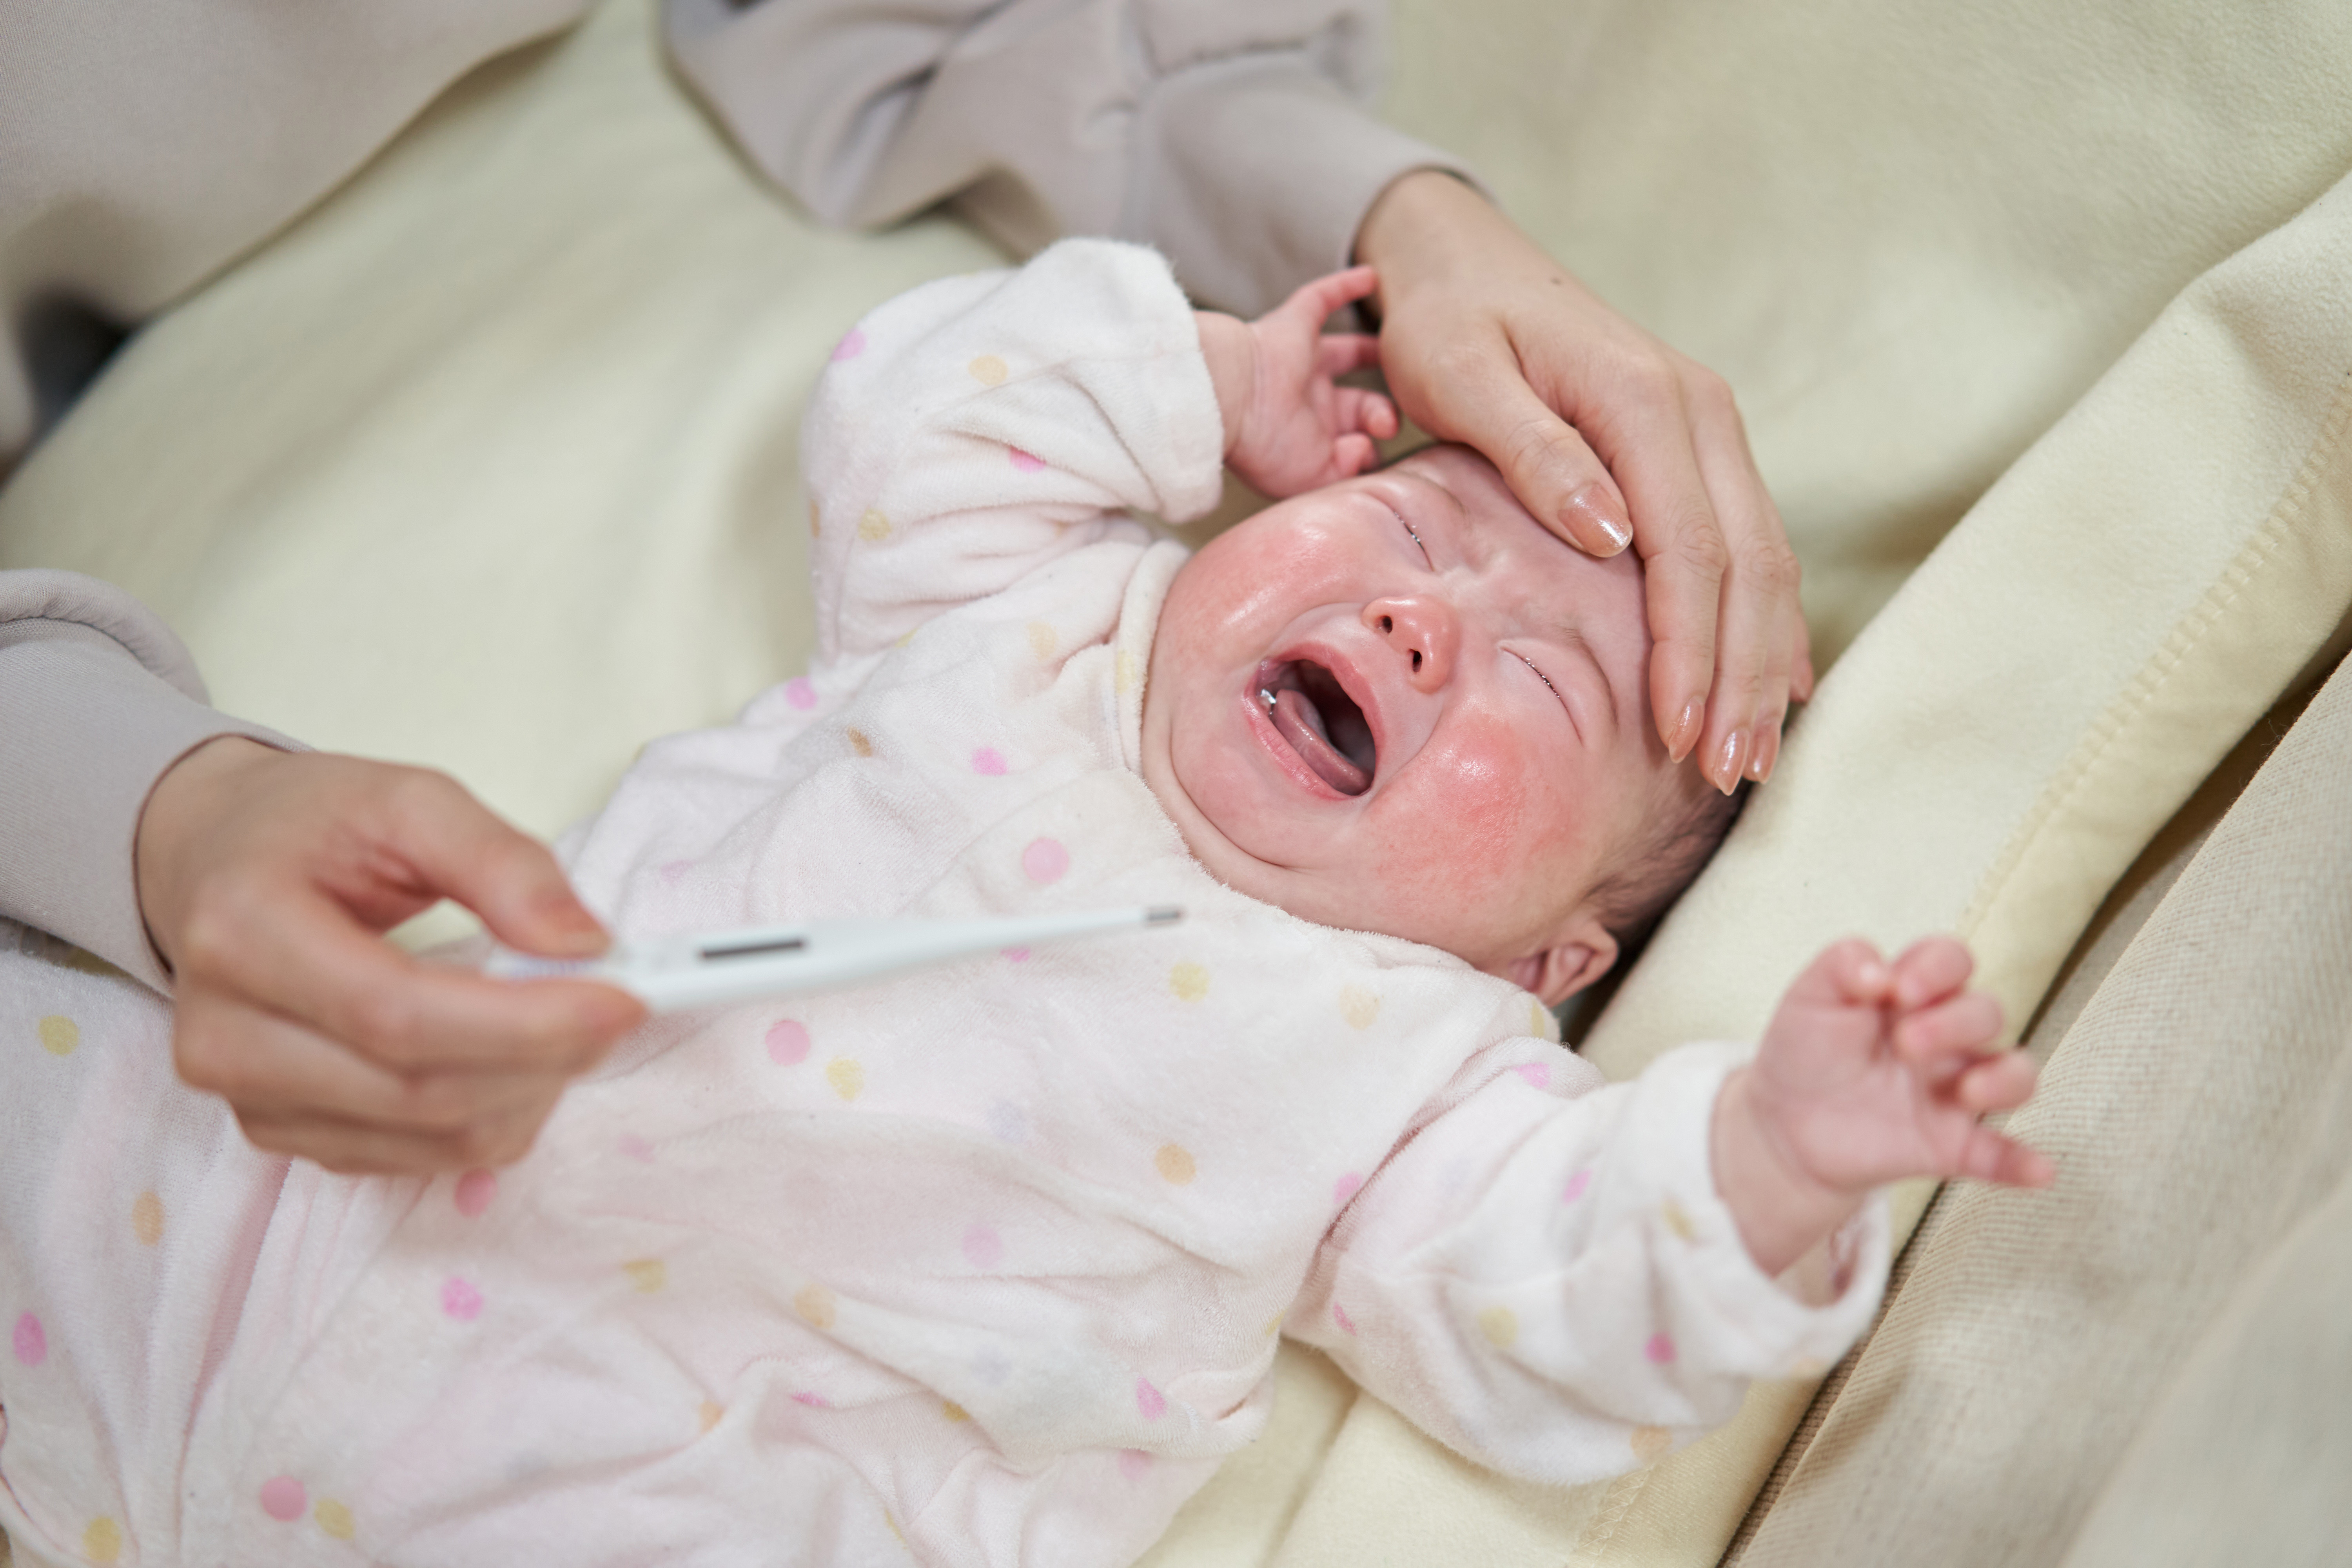 Speedoc children's health for sick babies